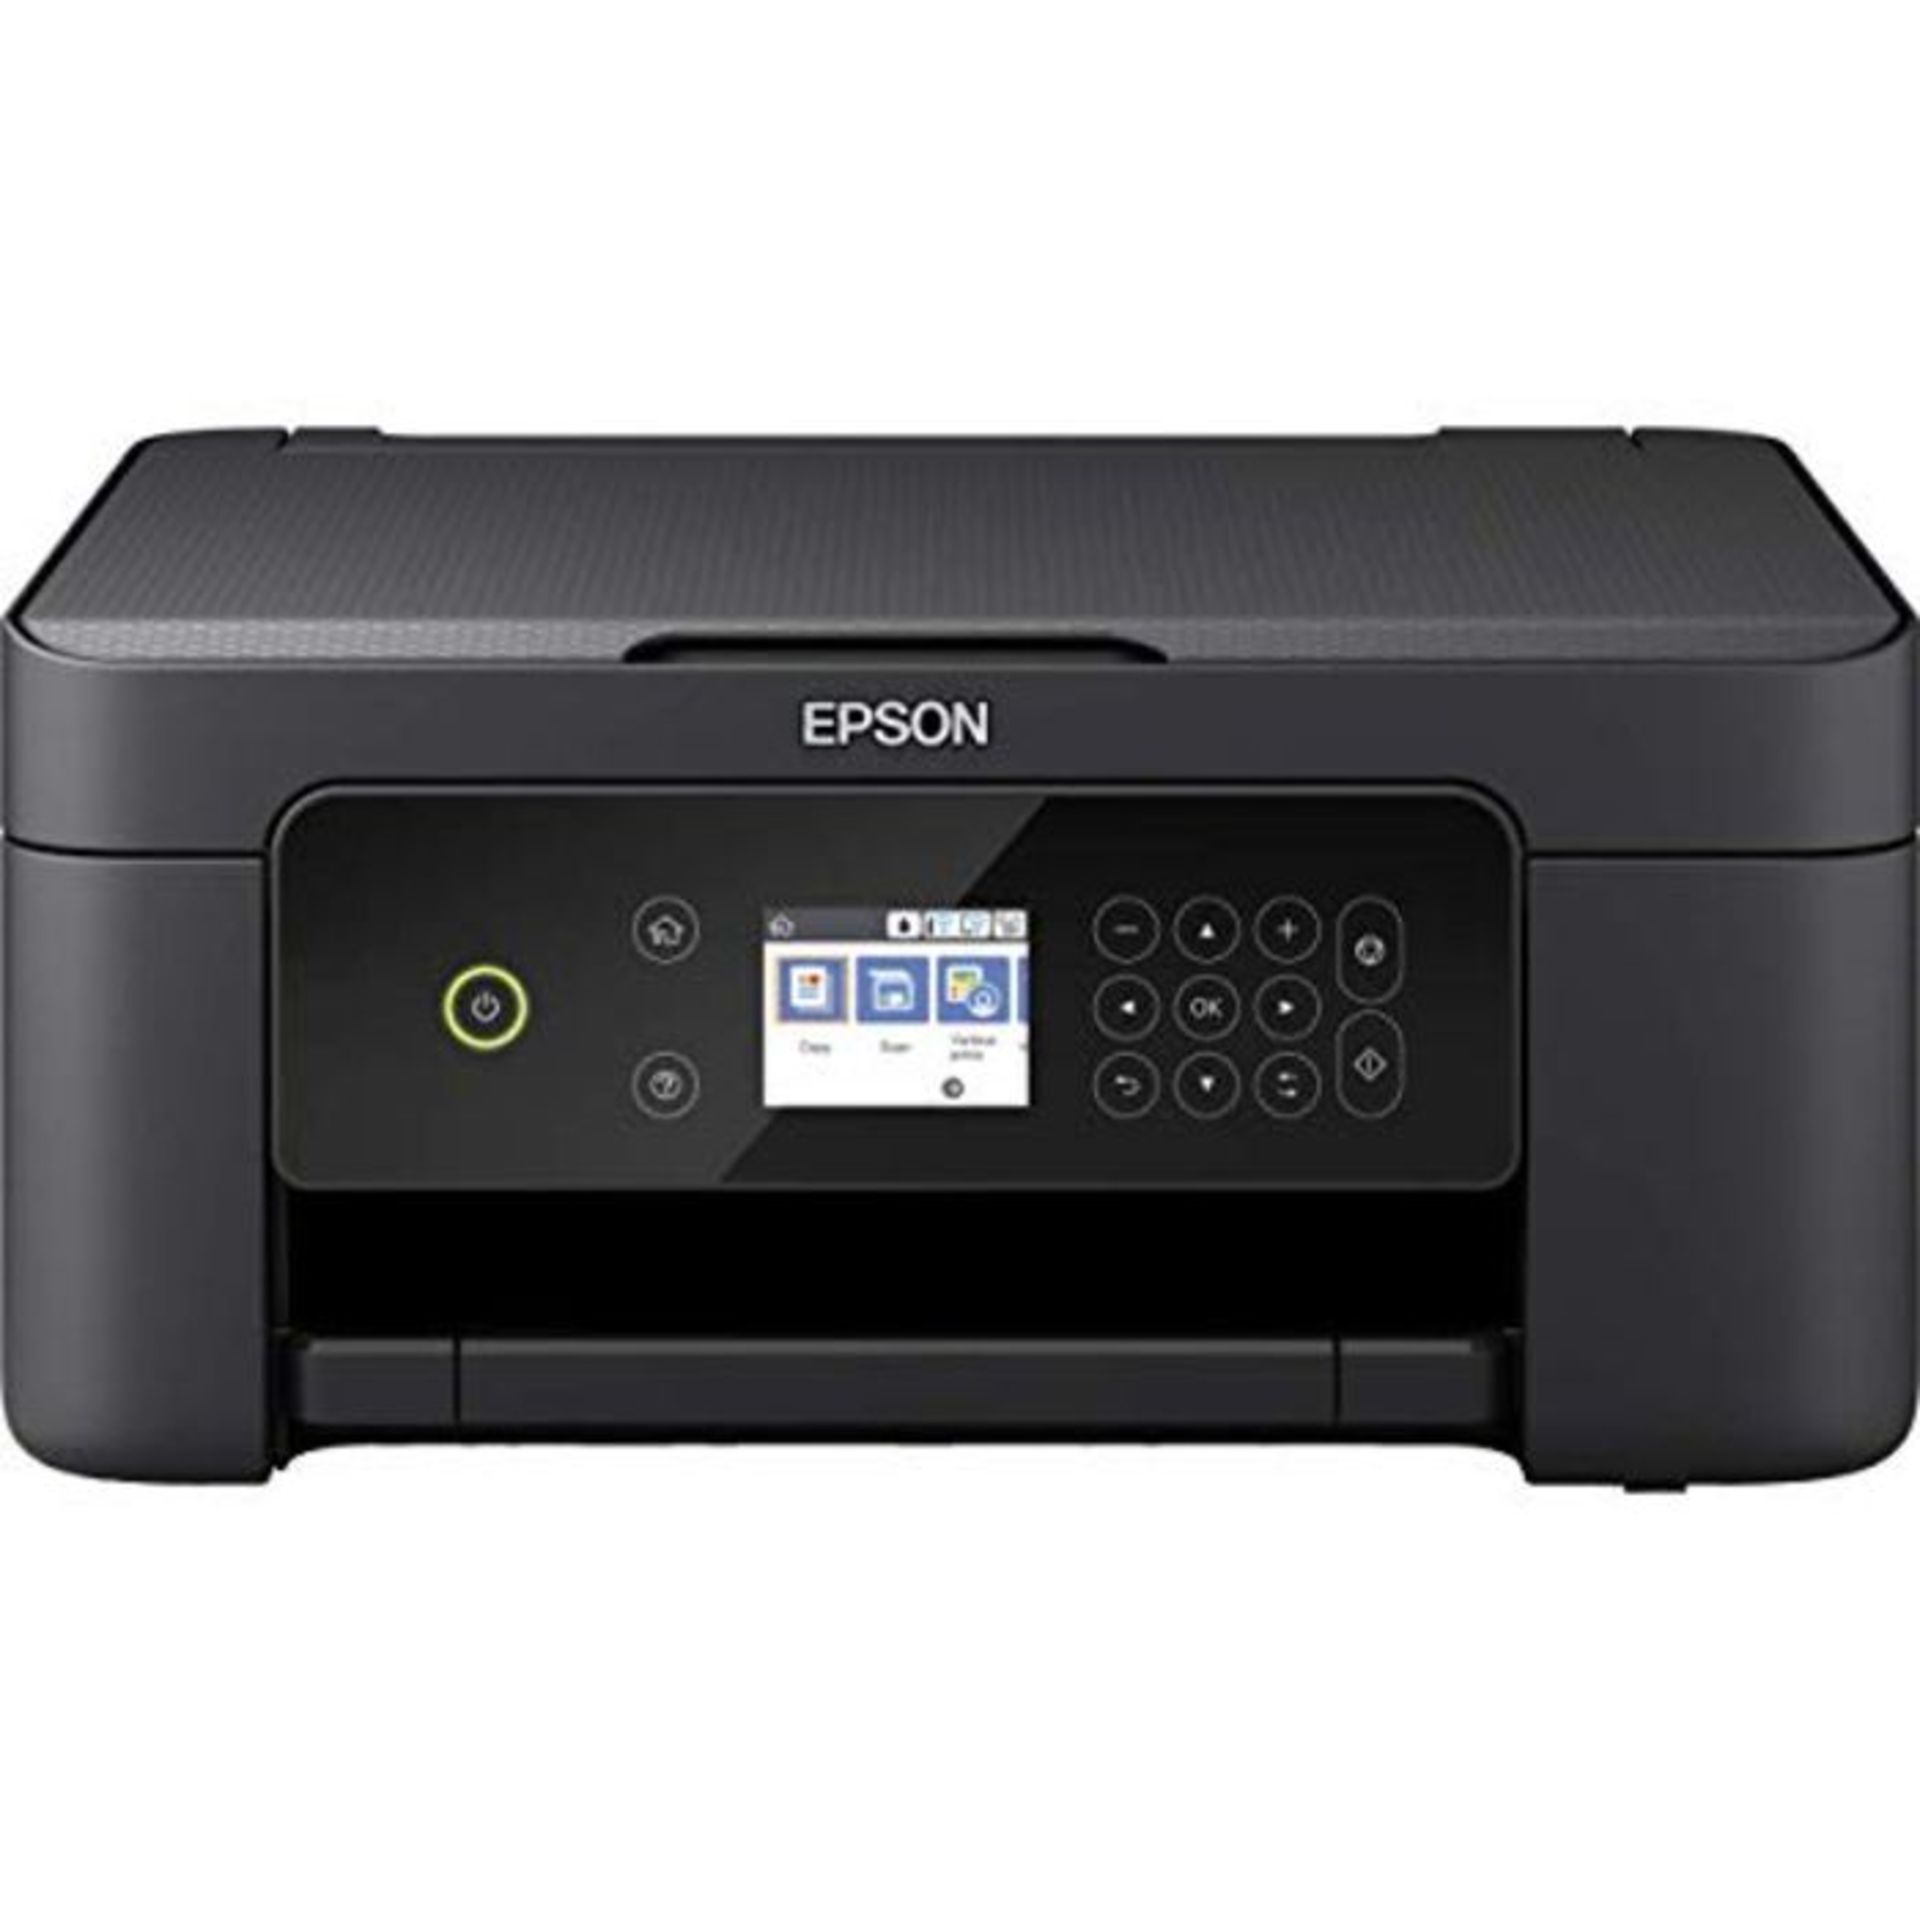 RRP £75.00 Epson Expression Home XP-4100 Print/Scan/Copy Wi-Fi Printer, Black